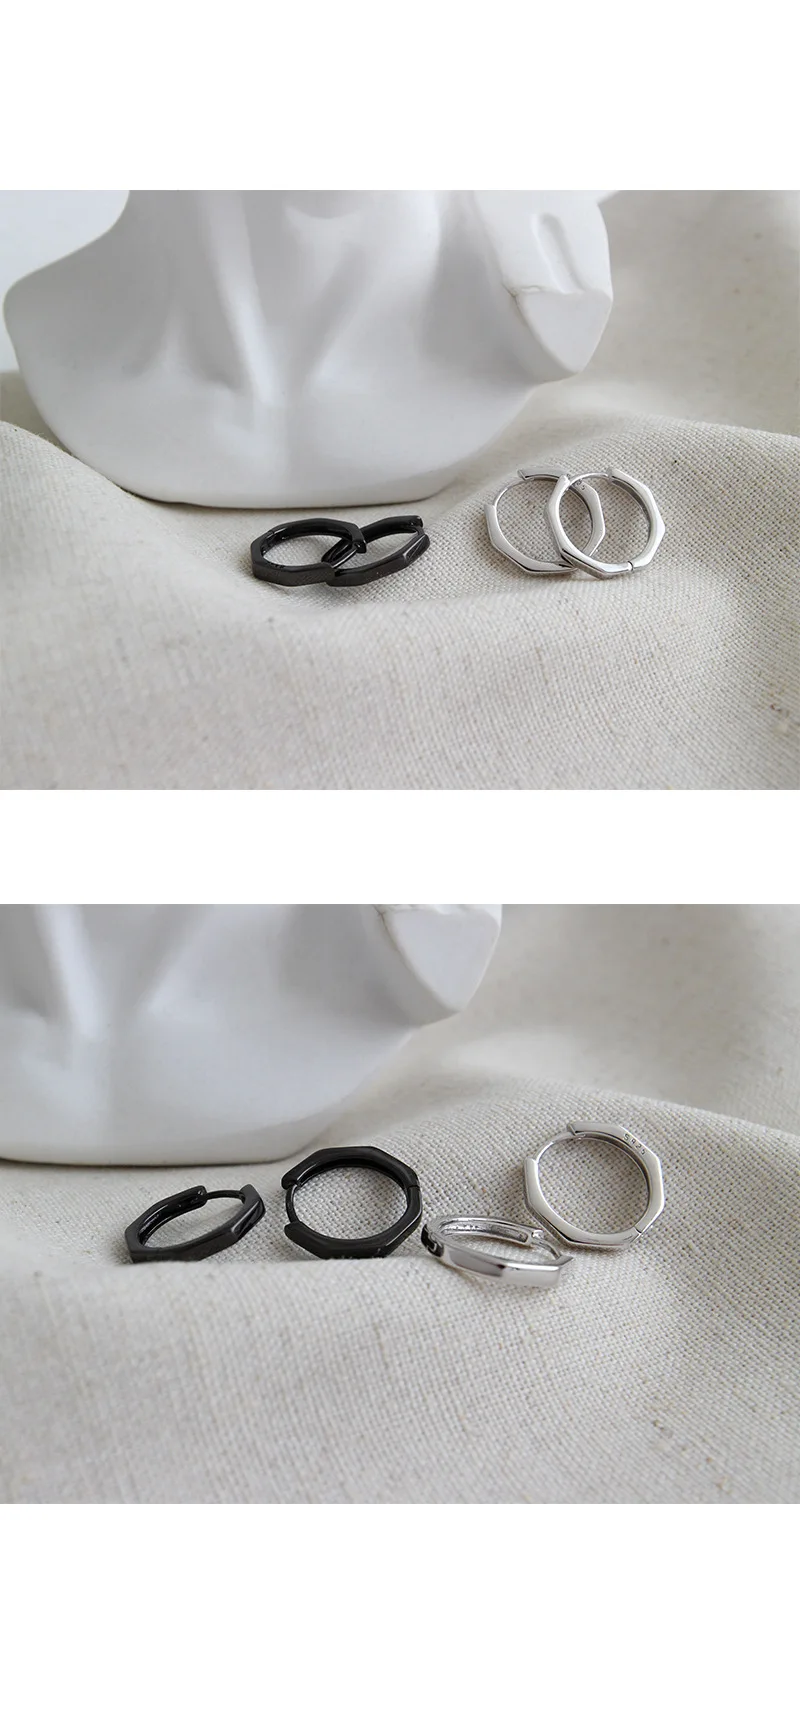 Ф. И. Н. С. Восьмиугольные 925 серебряные серьги маленькие серьги-кольца геометрические пистолеты черного цвета корейские серьги Модные Ювелирные изделия Подарки для девочек